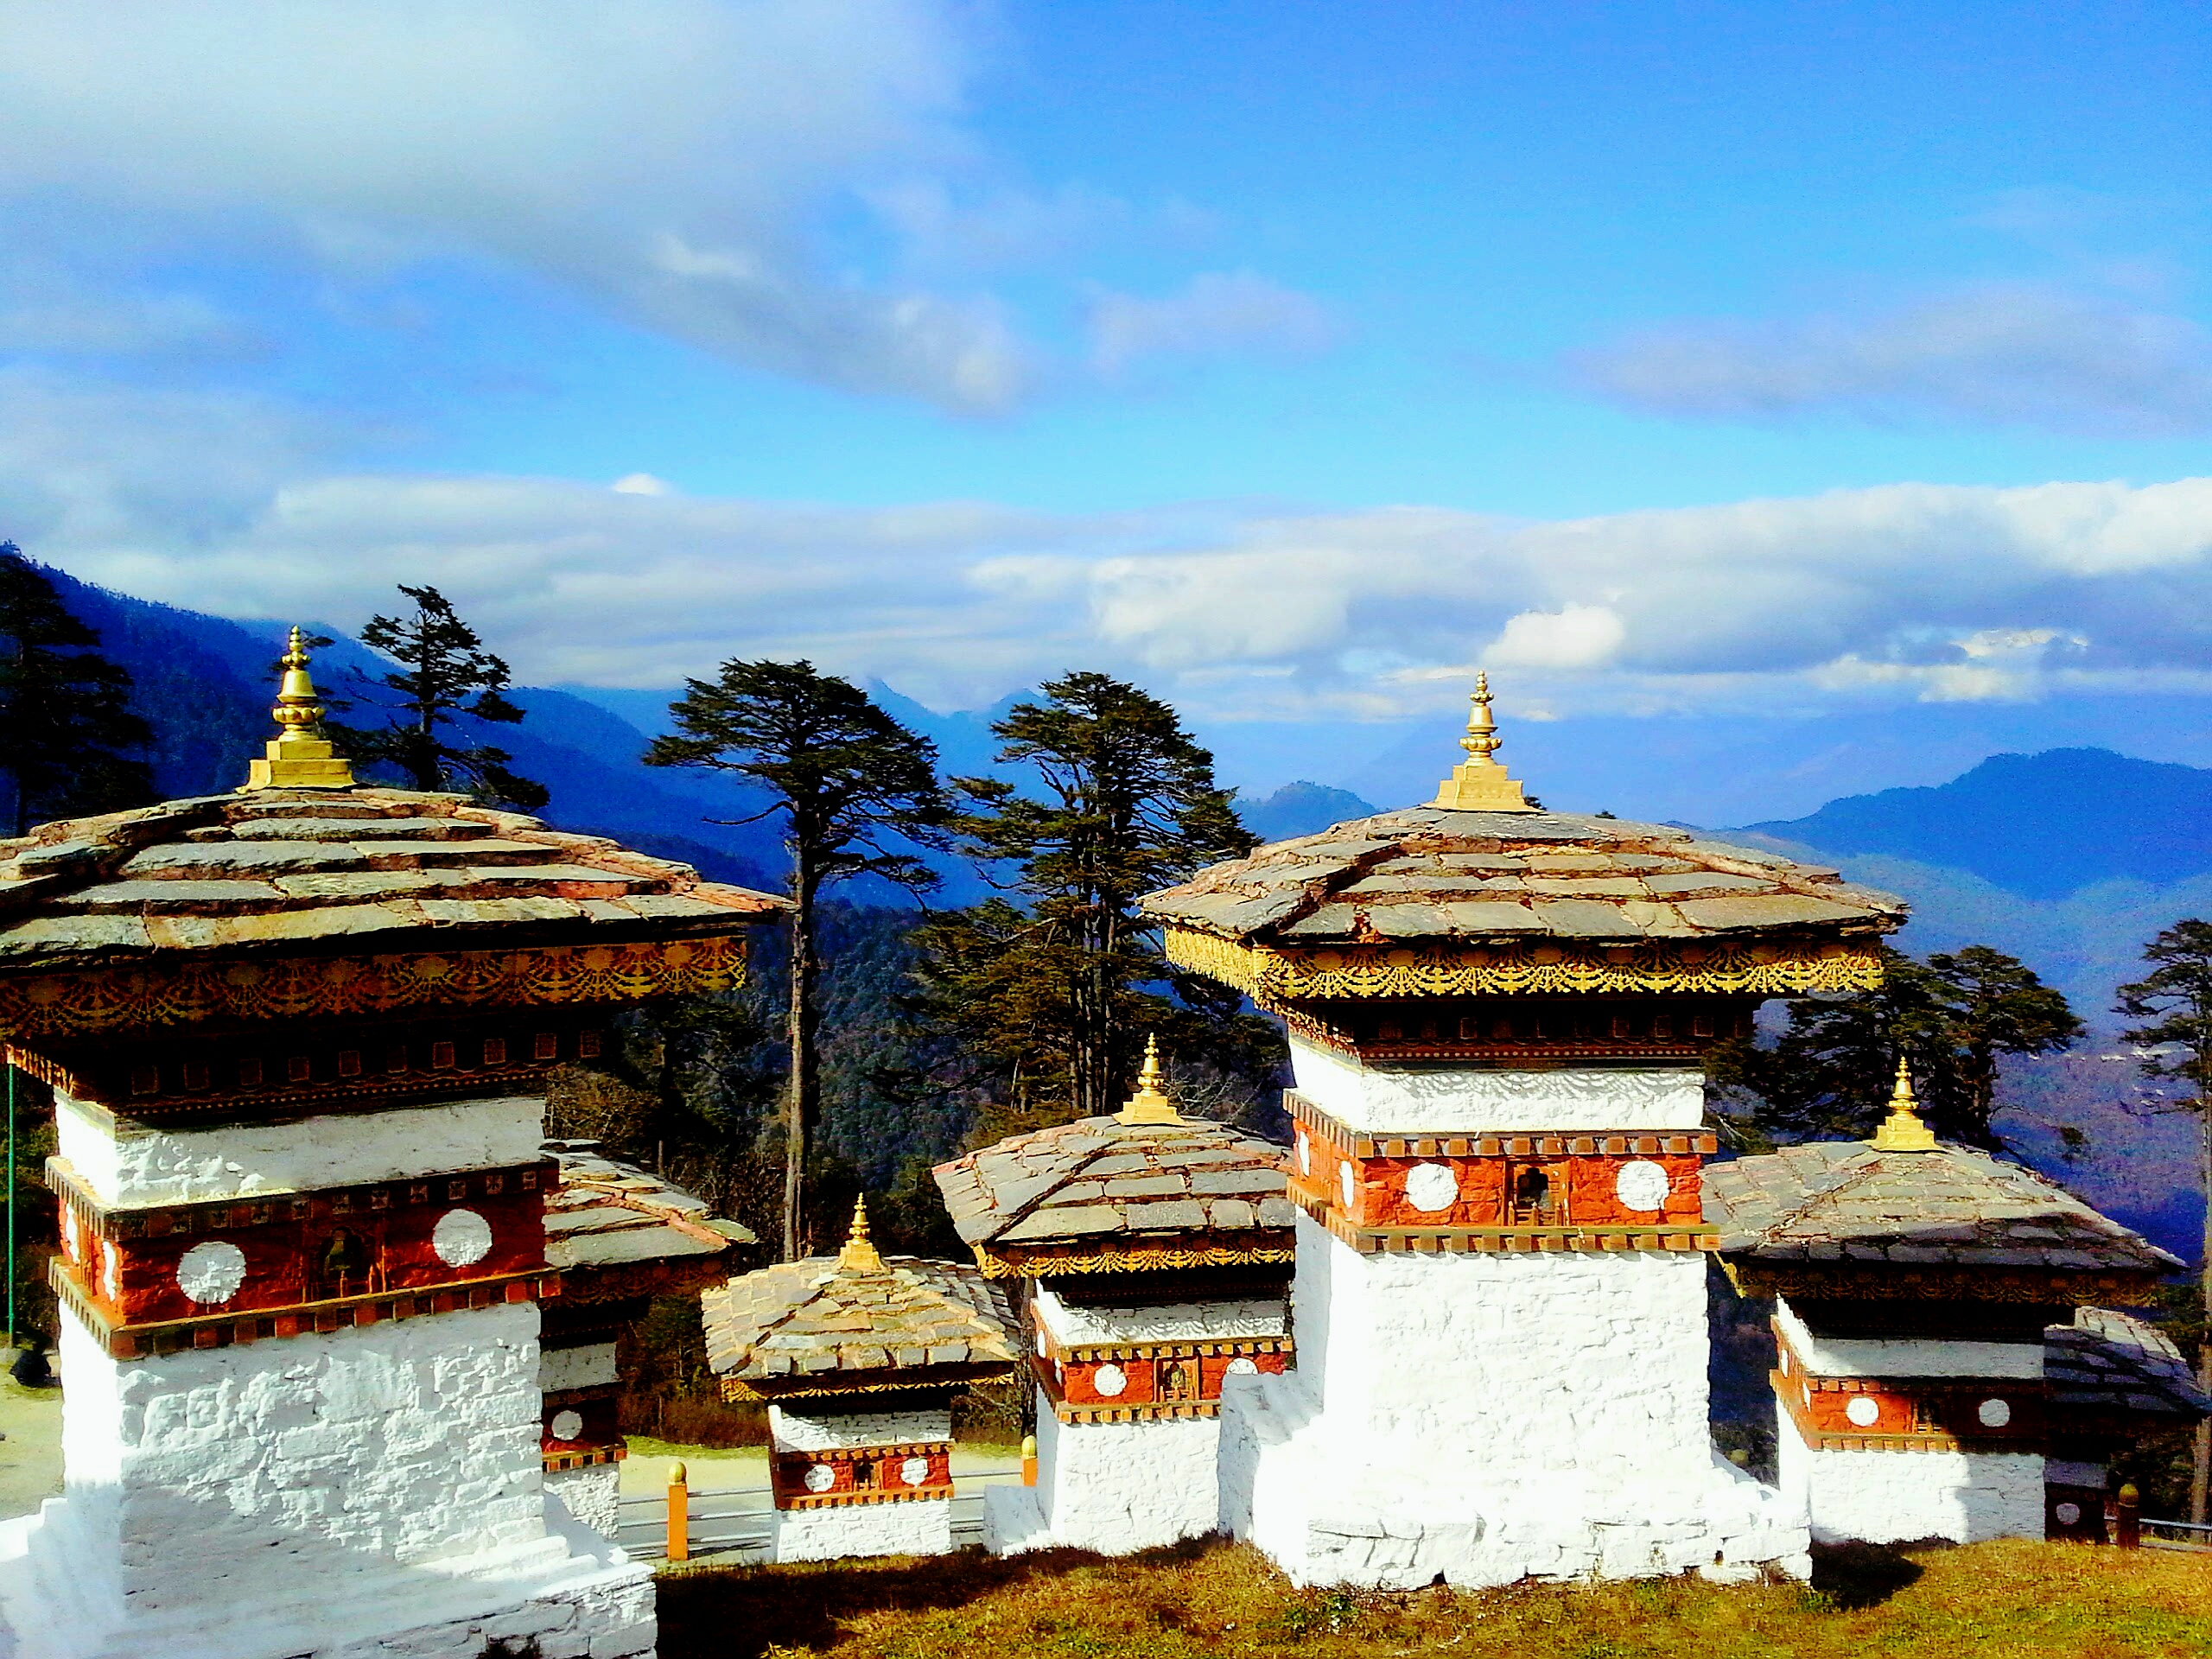 童话王国不丹,外交成为累赘,作为邻居却不与我国建交